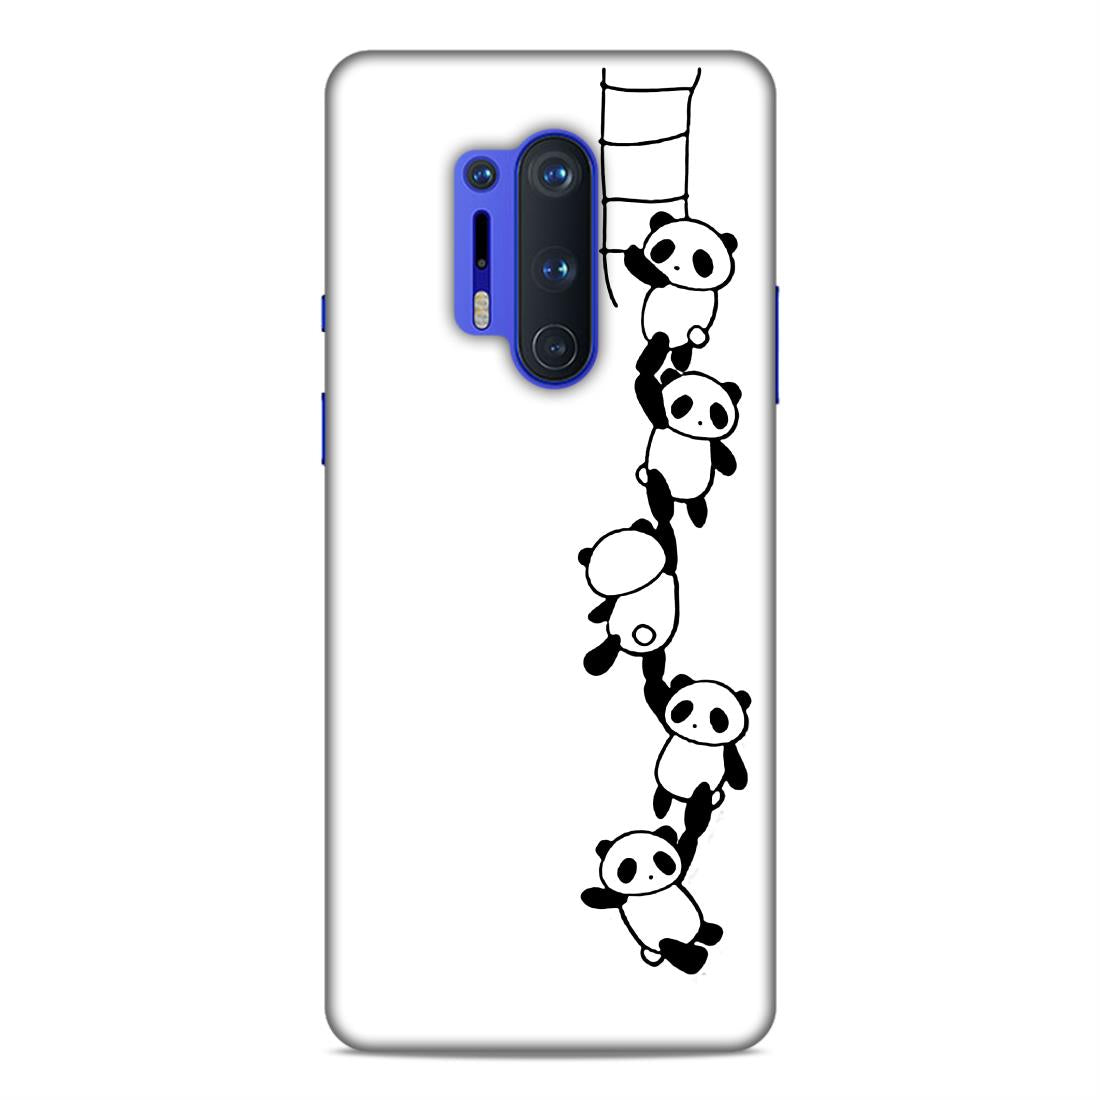 Panda Hard Back Case For OnePlus 8 Pro